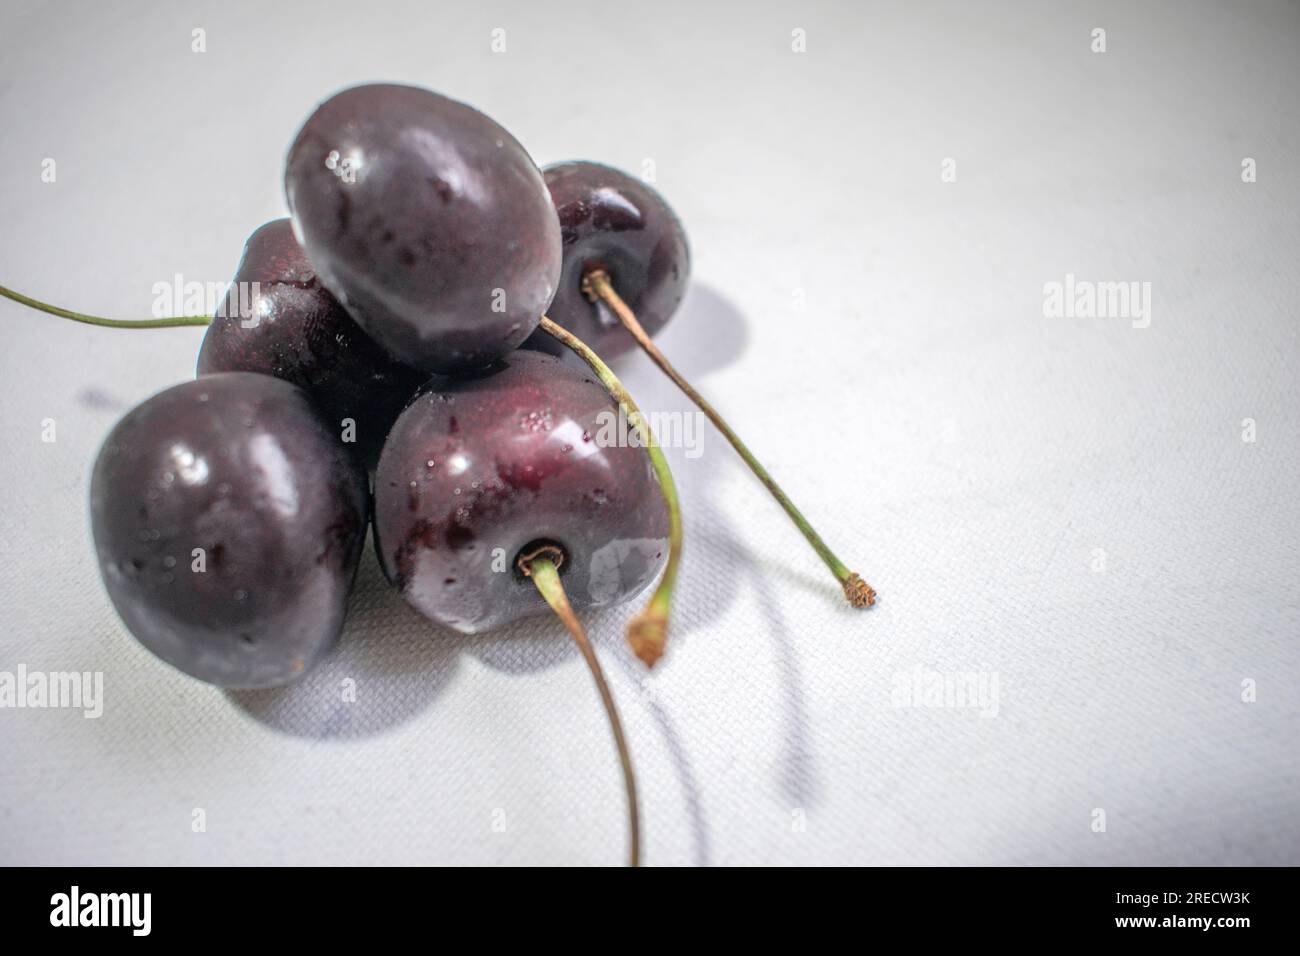 Black Cherry: Ein eindrucksvolles Bild mit einer dunklen schwarzen Kirsche auf einem strahlend weißen Hintergrund, das ein optisch ansprechendes und auffälliges Kont Stockfoto